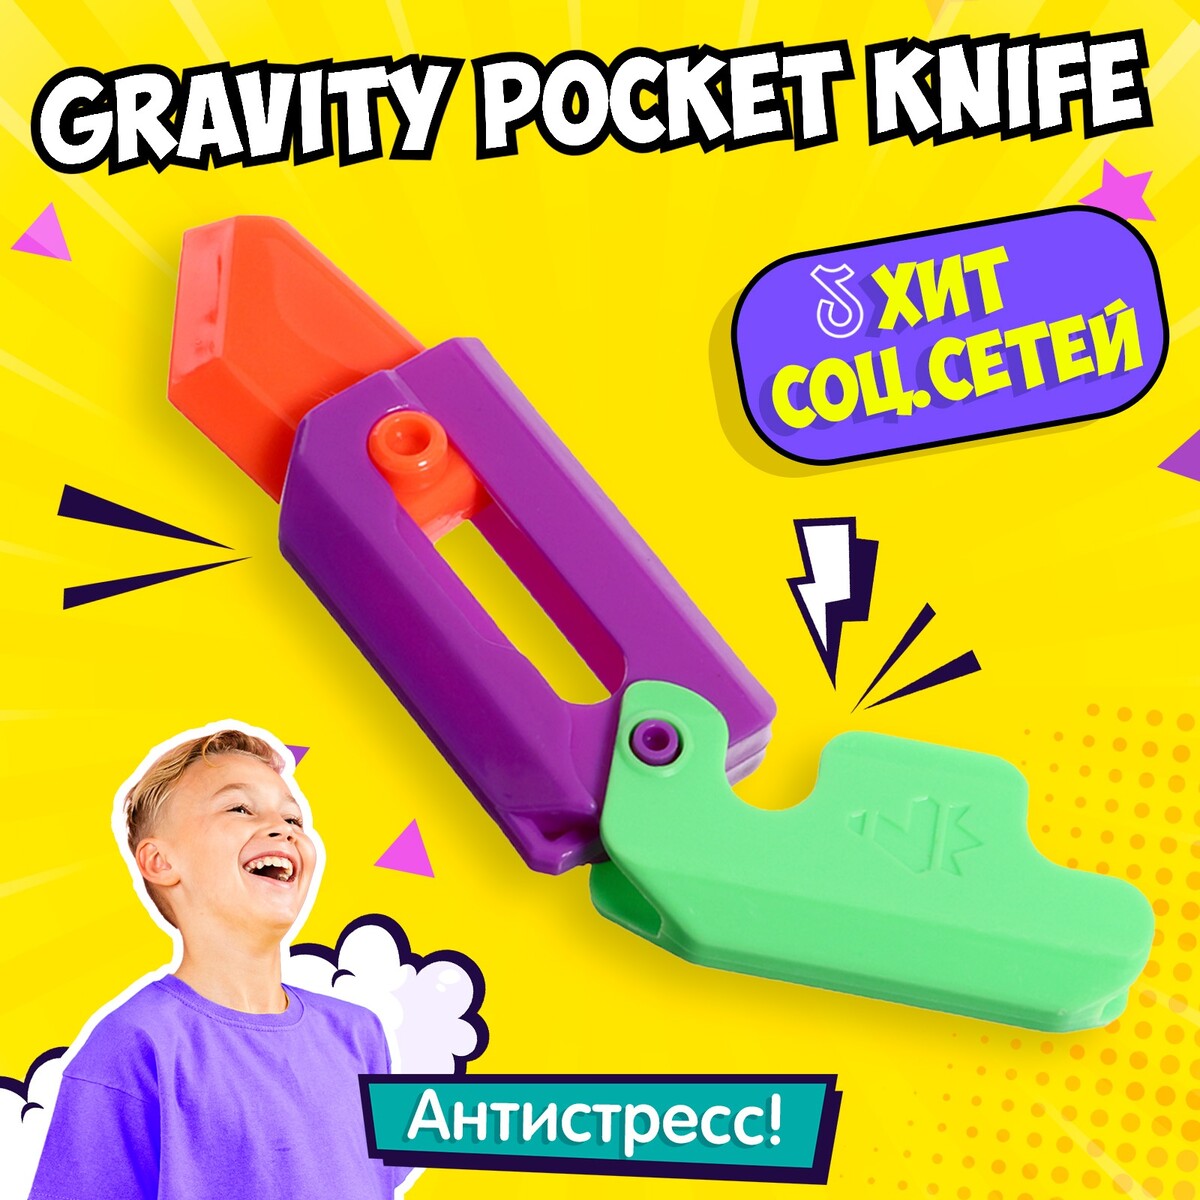   gravity pocket knife